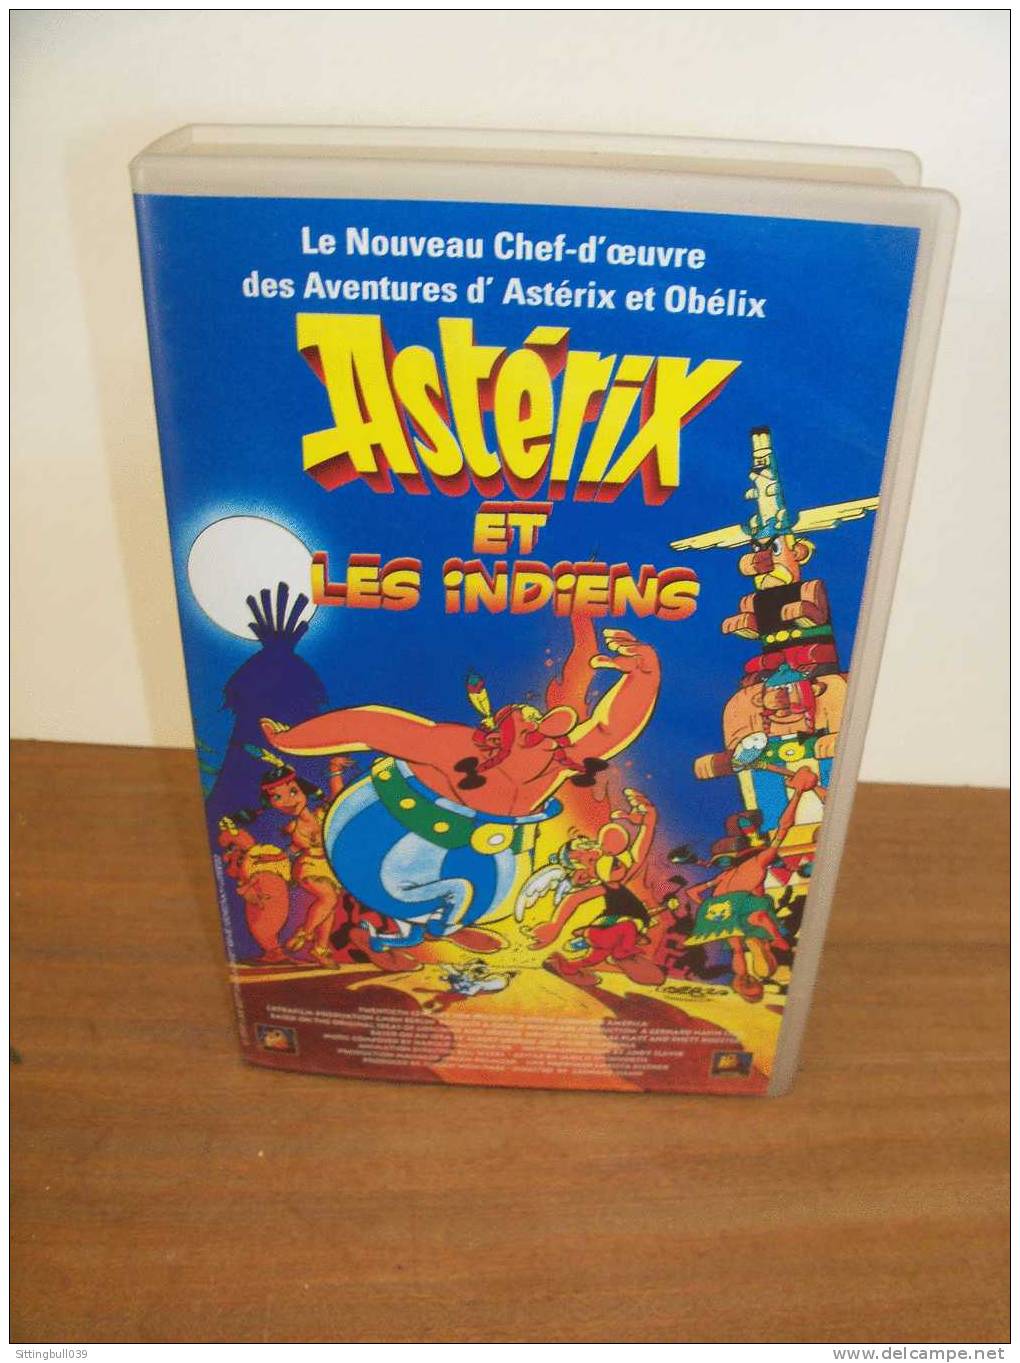 ASTERIX Et LES INDIENS. Le Film En K7 Hi-Fi Stereo + Une Entrée Gratuite Au PARC ASTERIX. 1995 Ed. A. R/GOSCINNY-UDERZO - Video & DVD